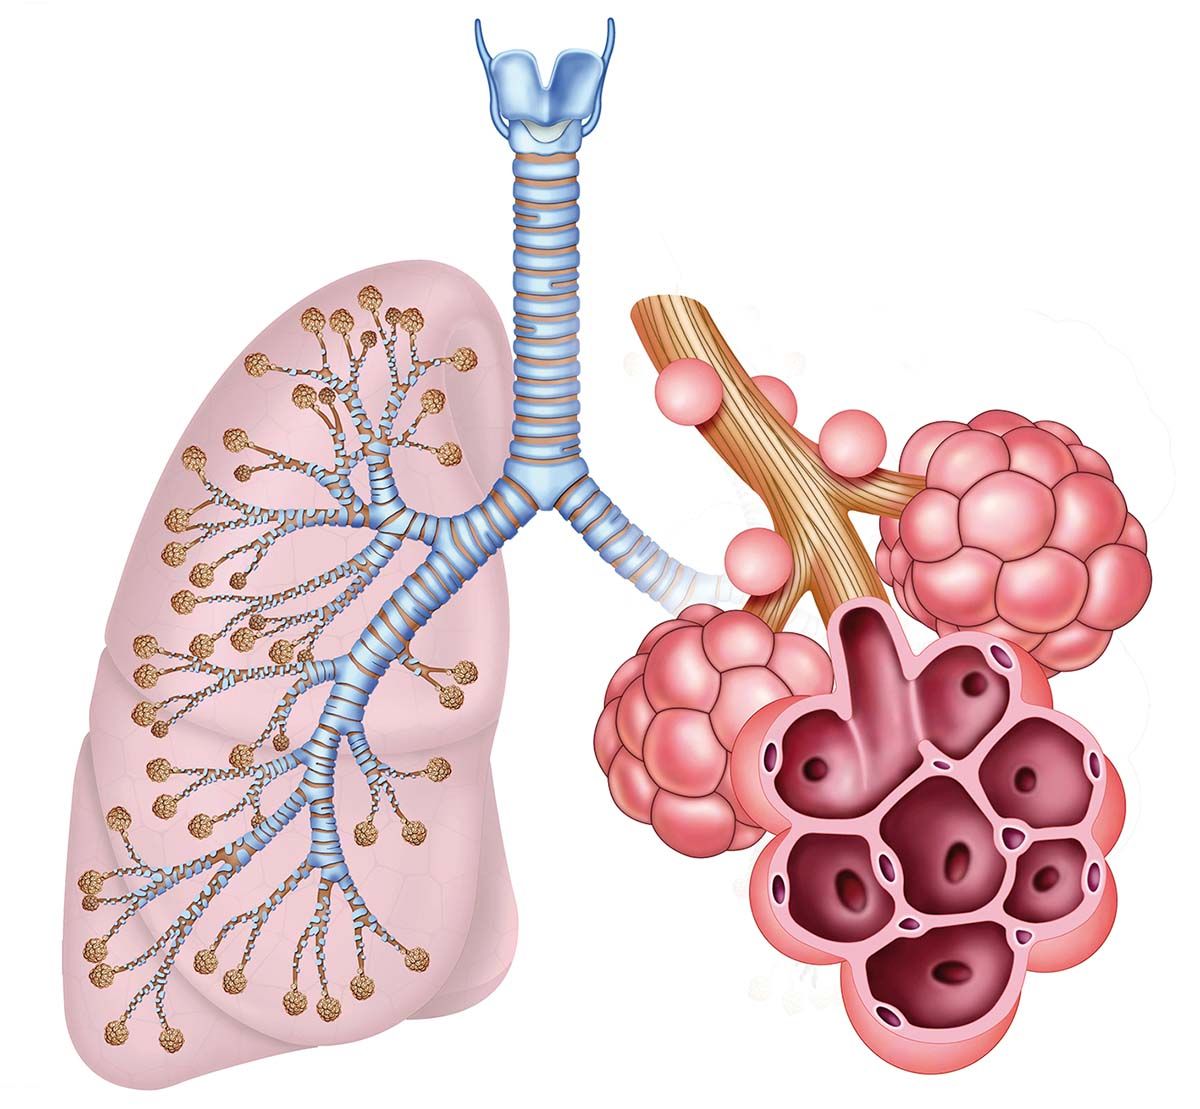 Studiul bolilor pulmonare pe un sistem alveolar artificial